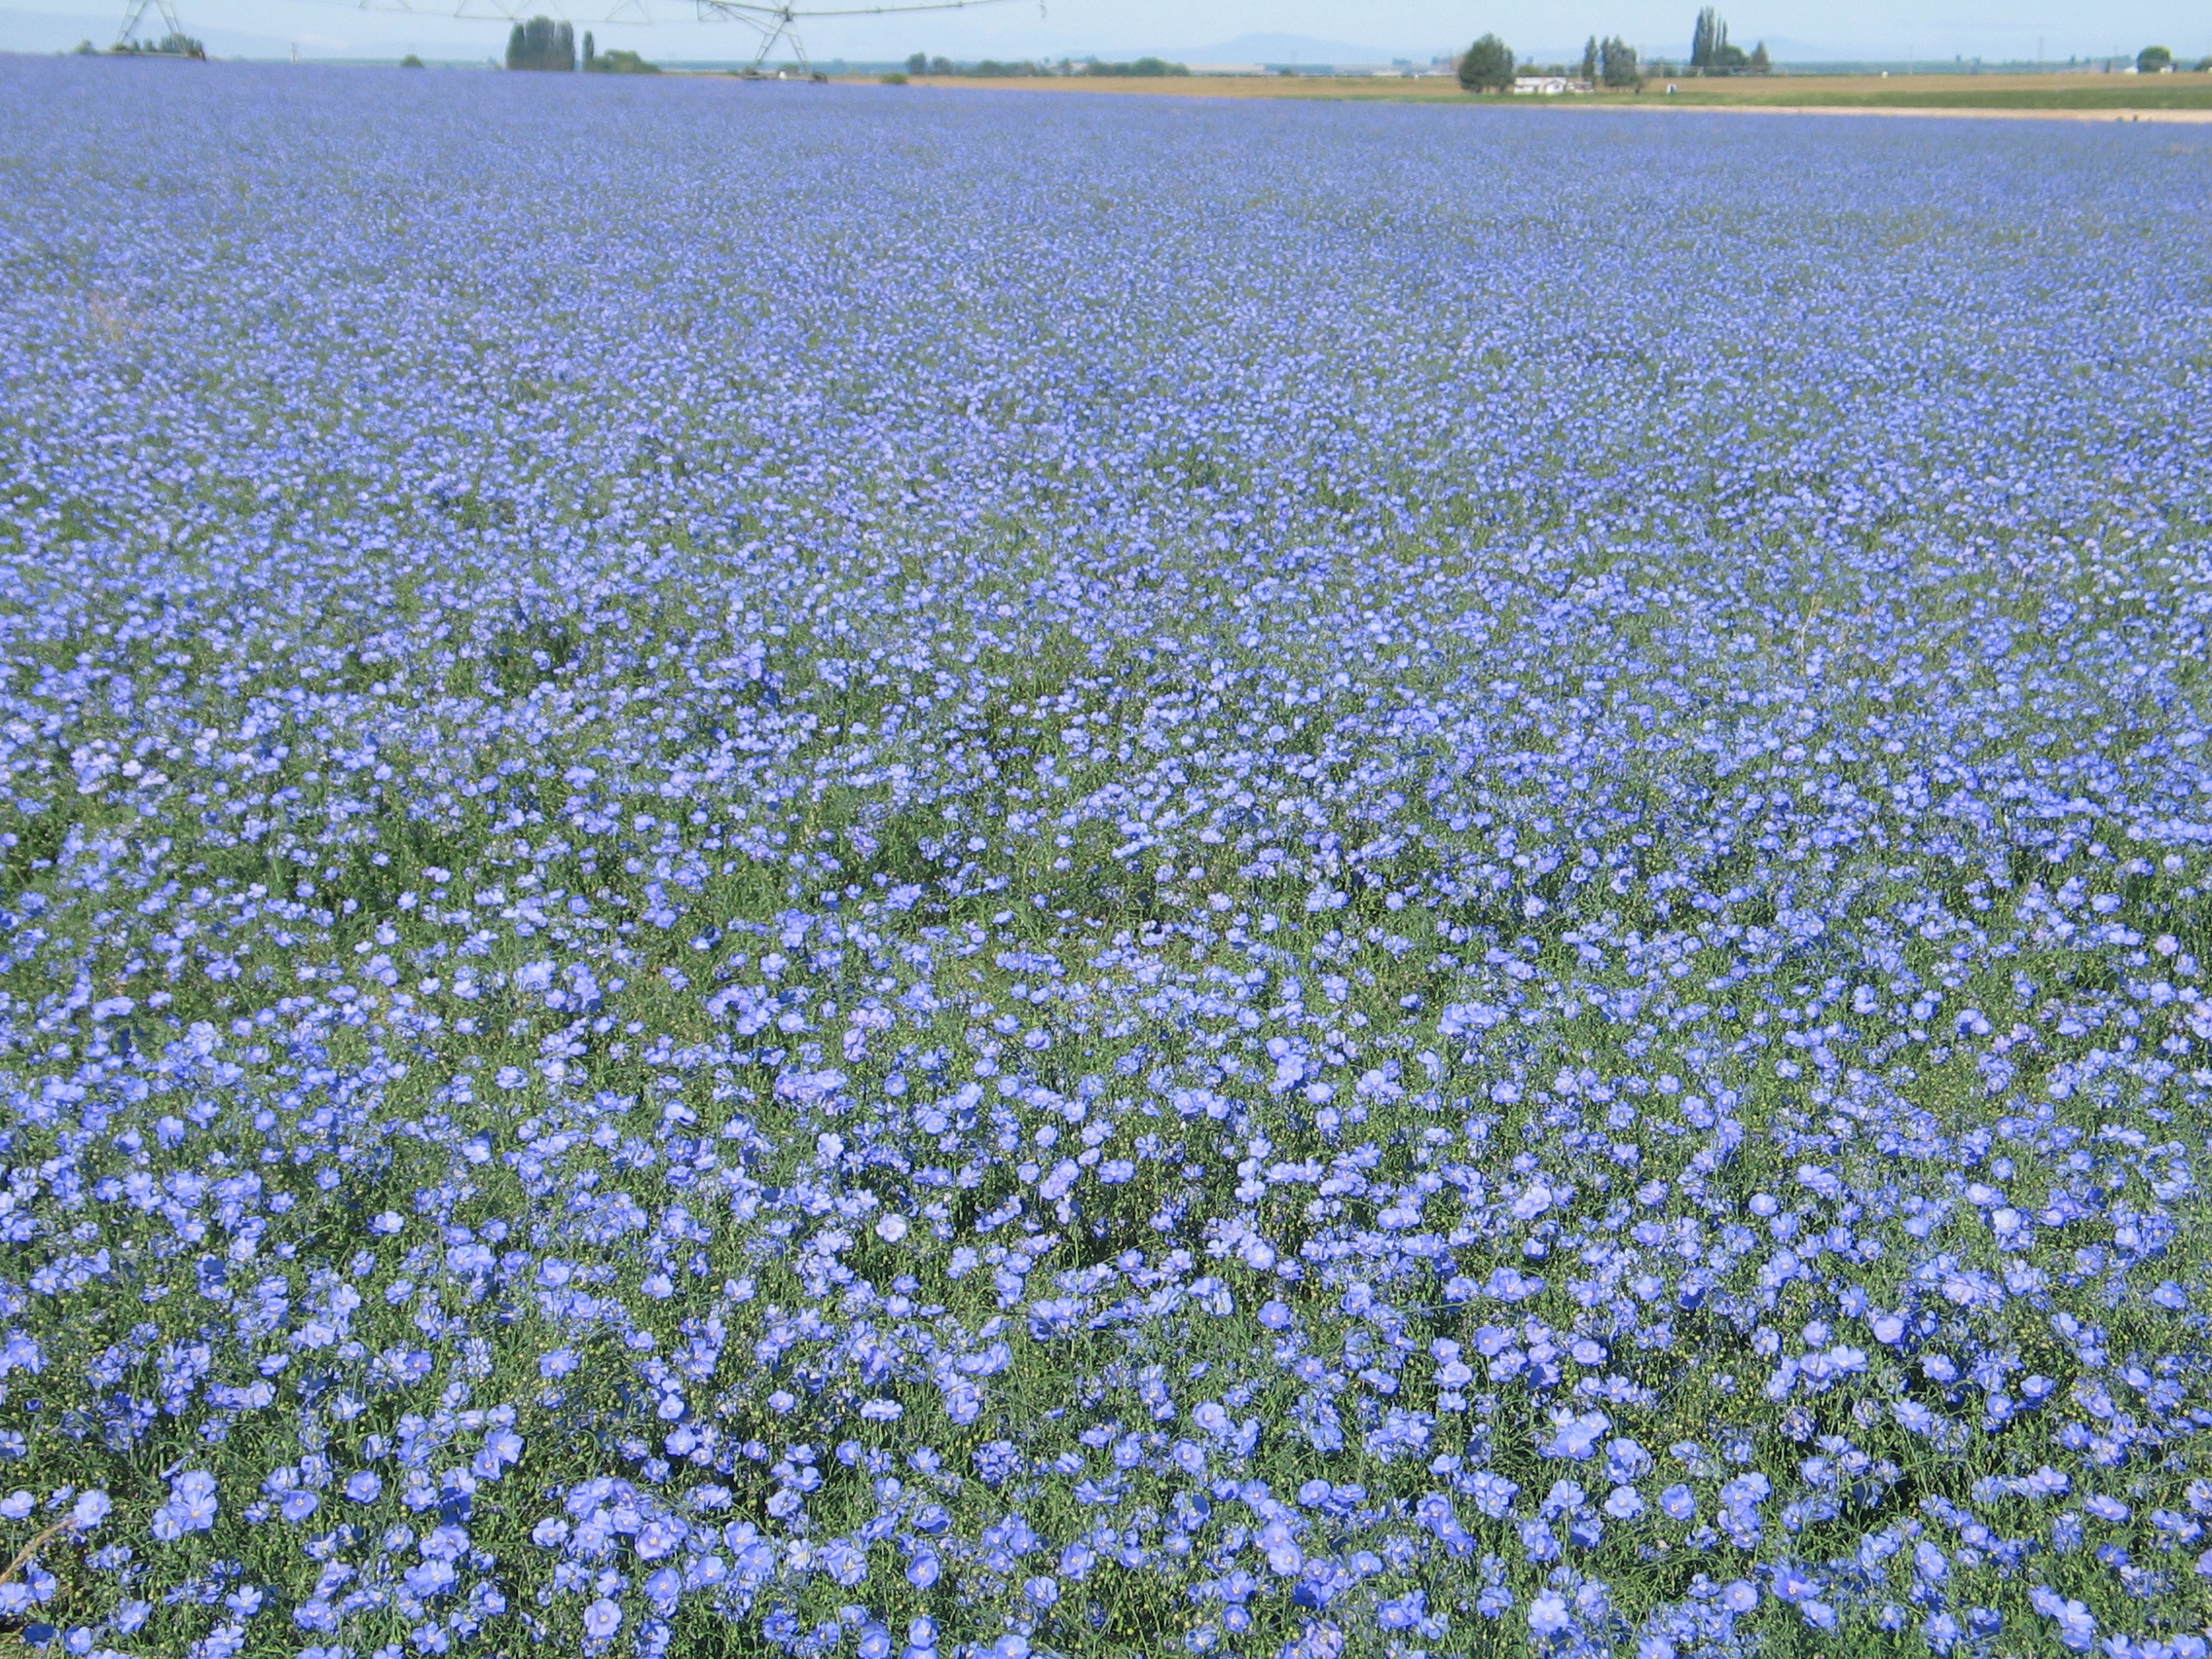 Appar Blue flax Linum perenne (2).JPG